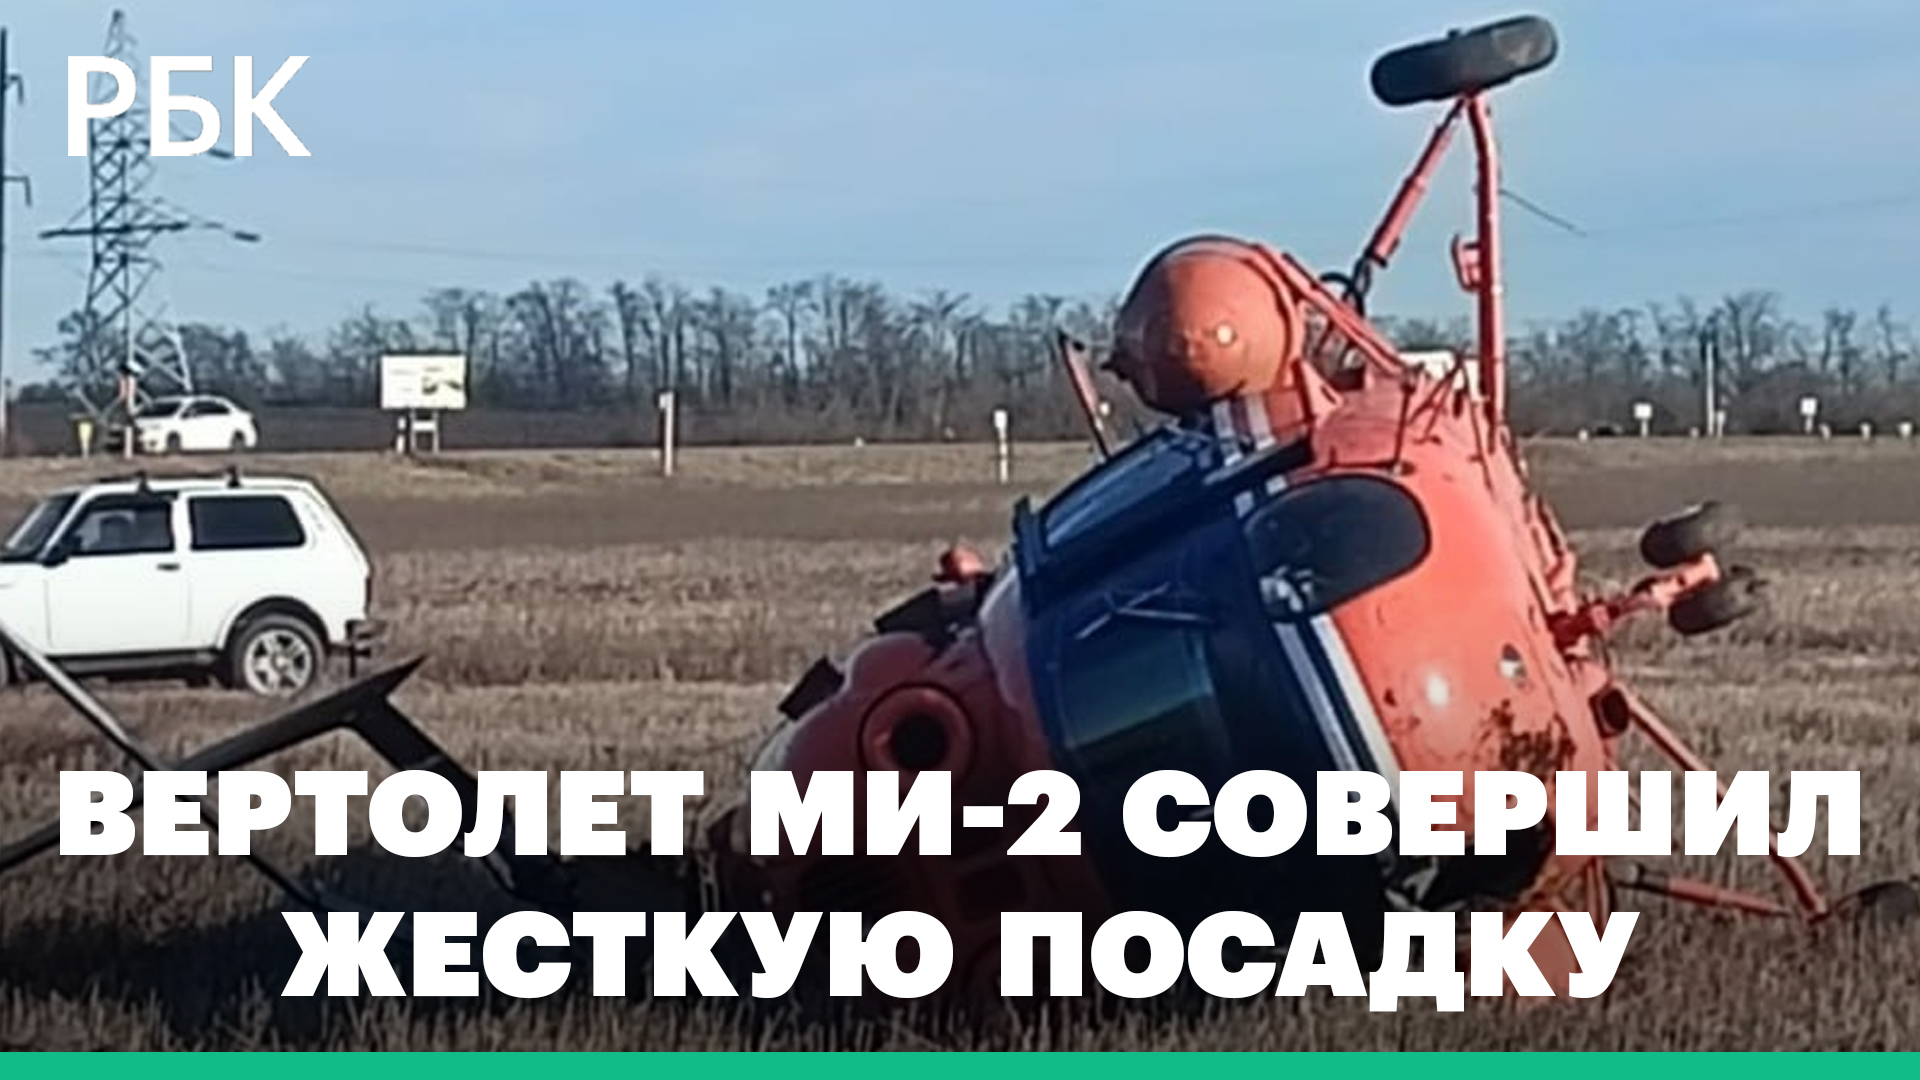 Вертолет Ми-2 совершил жесткую посадку на Ставрополье